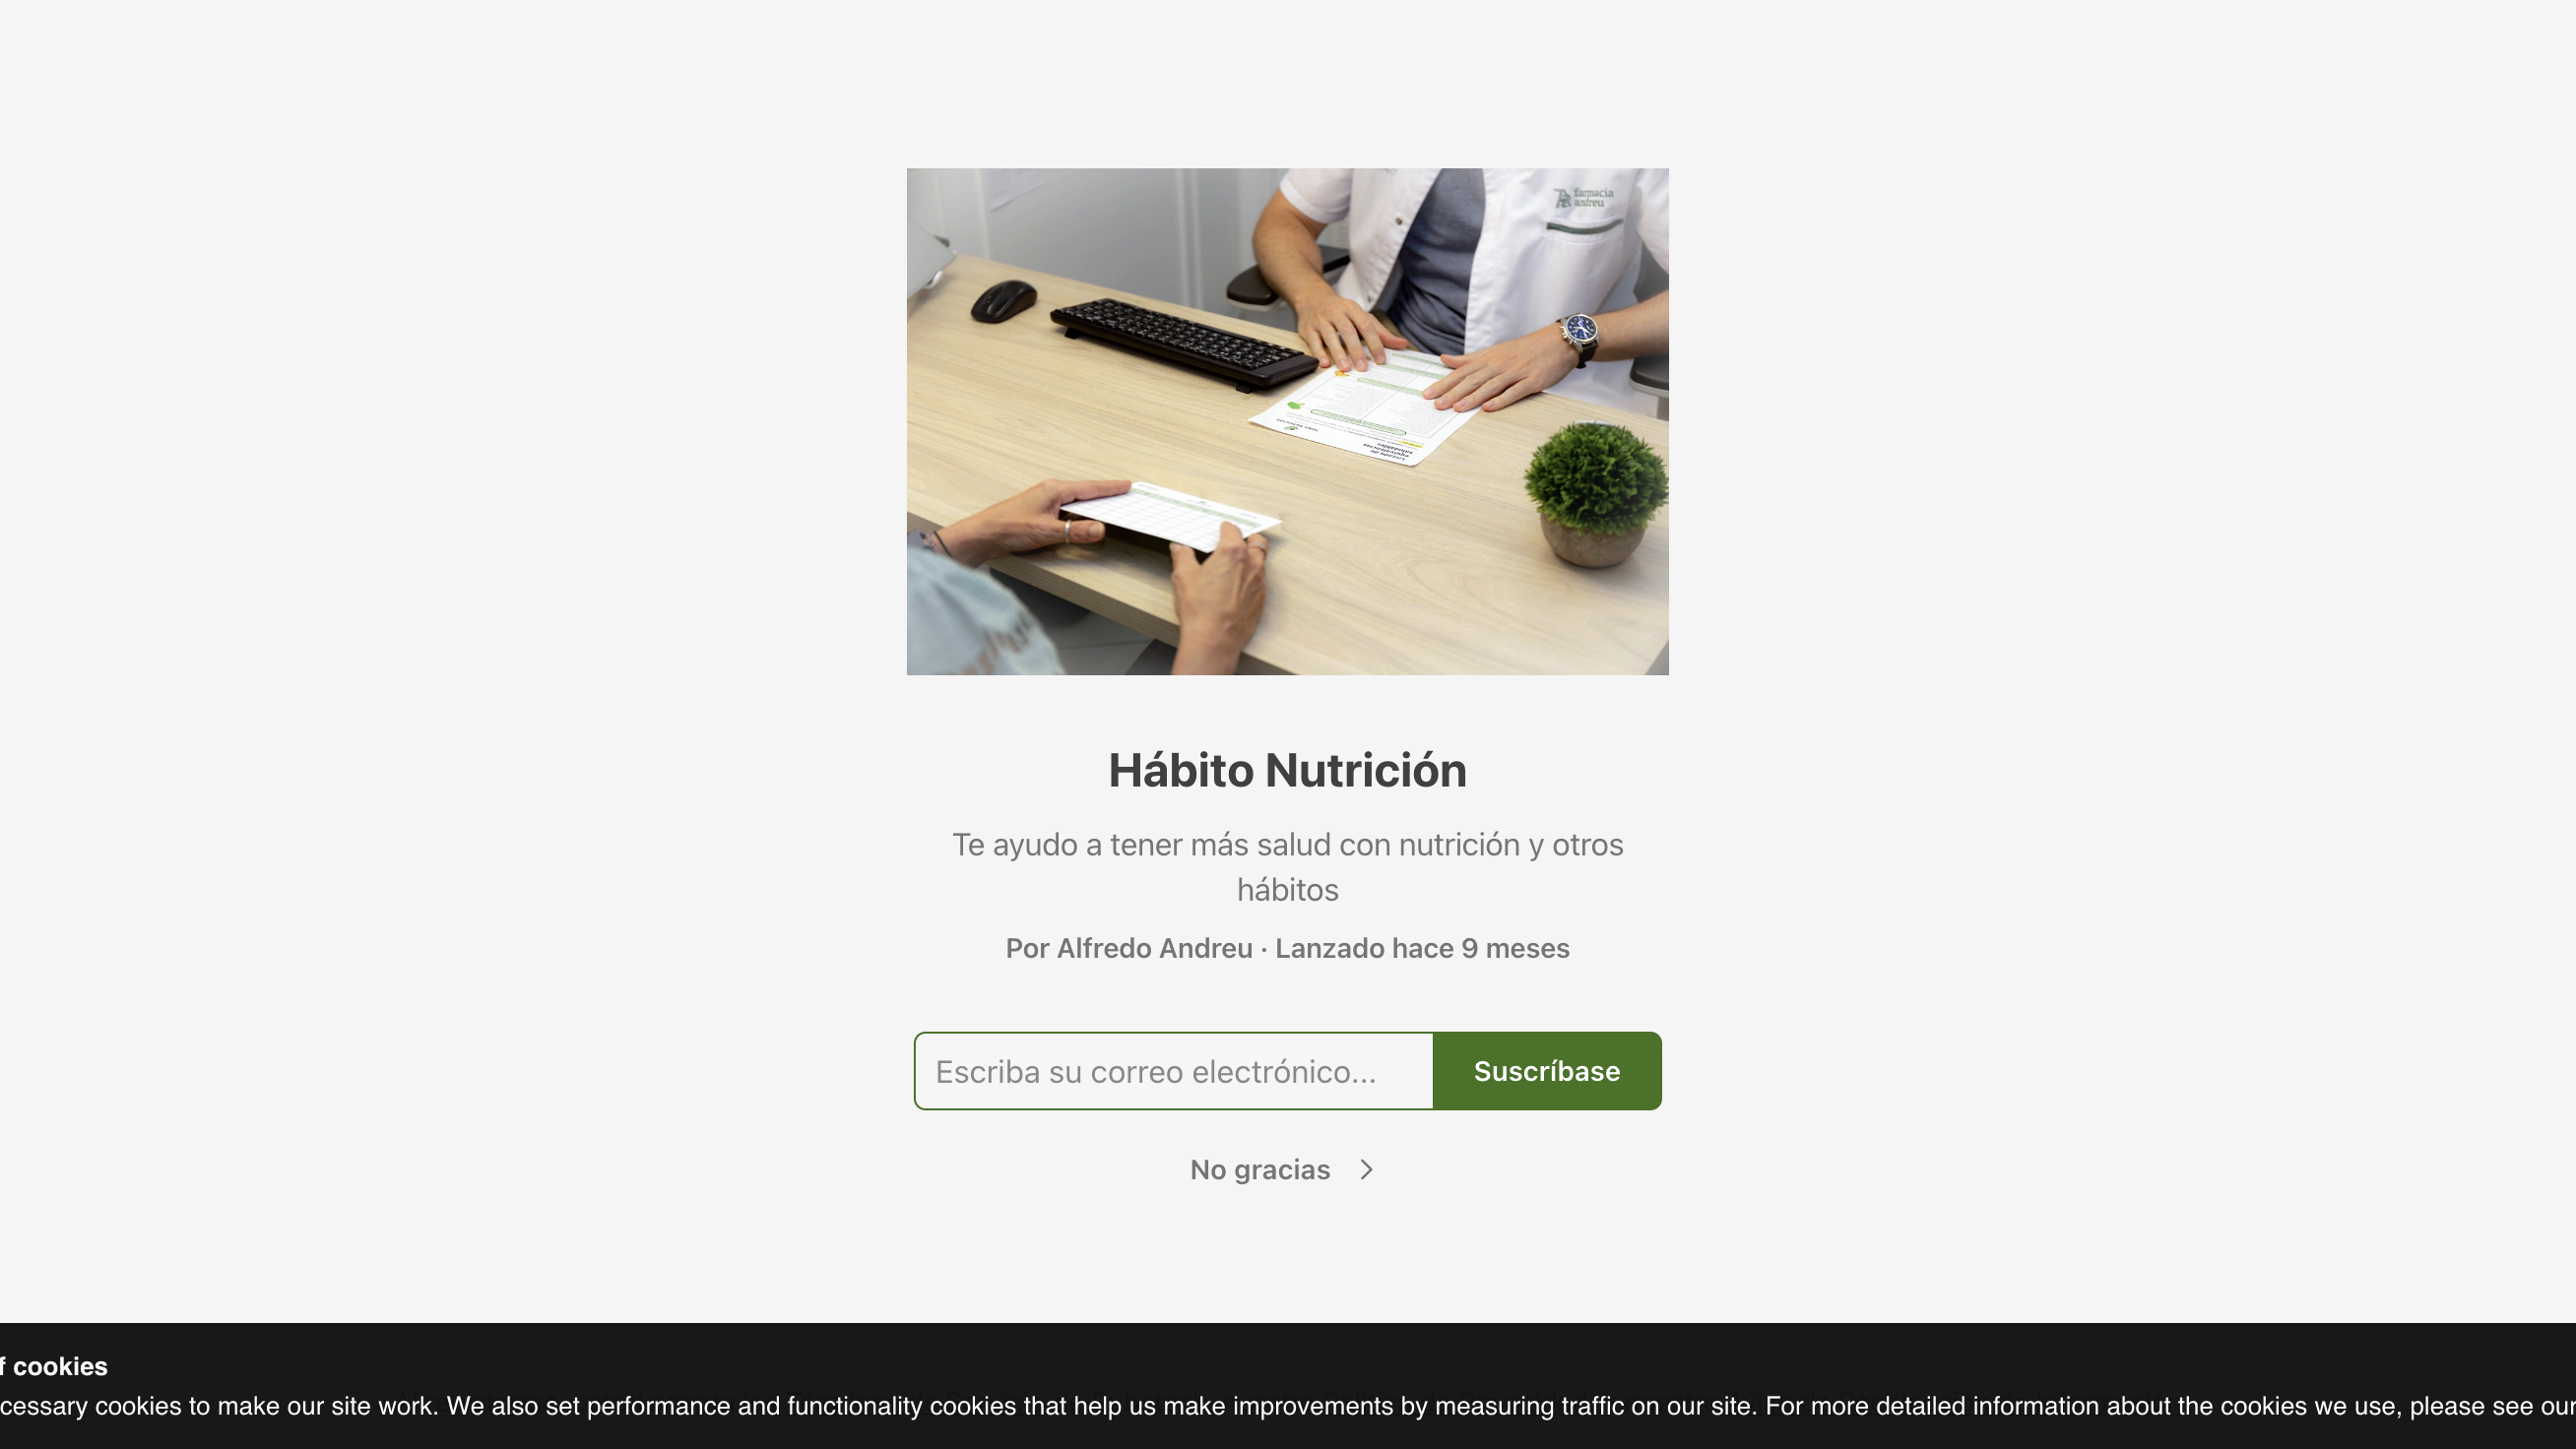 Habito Nutricion homepage